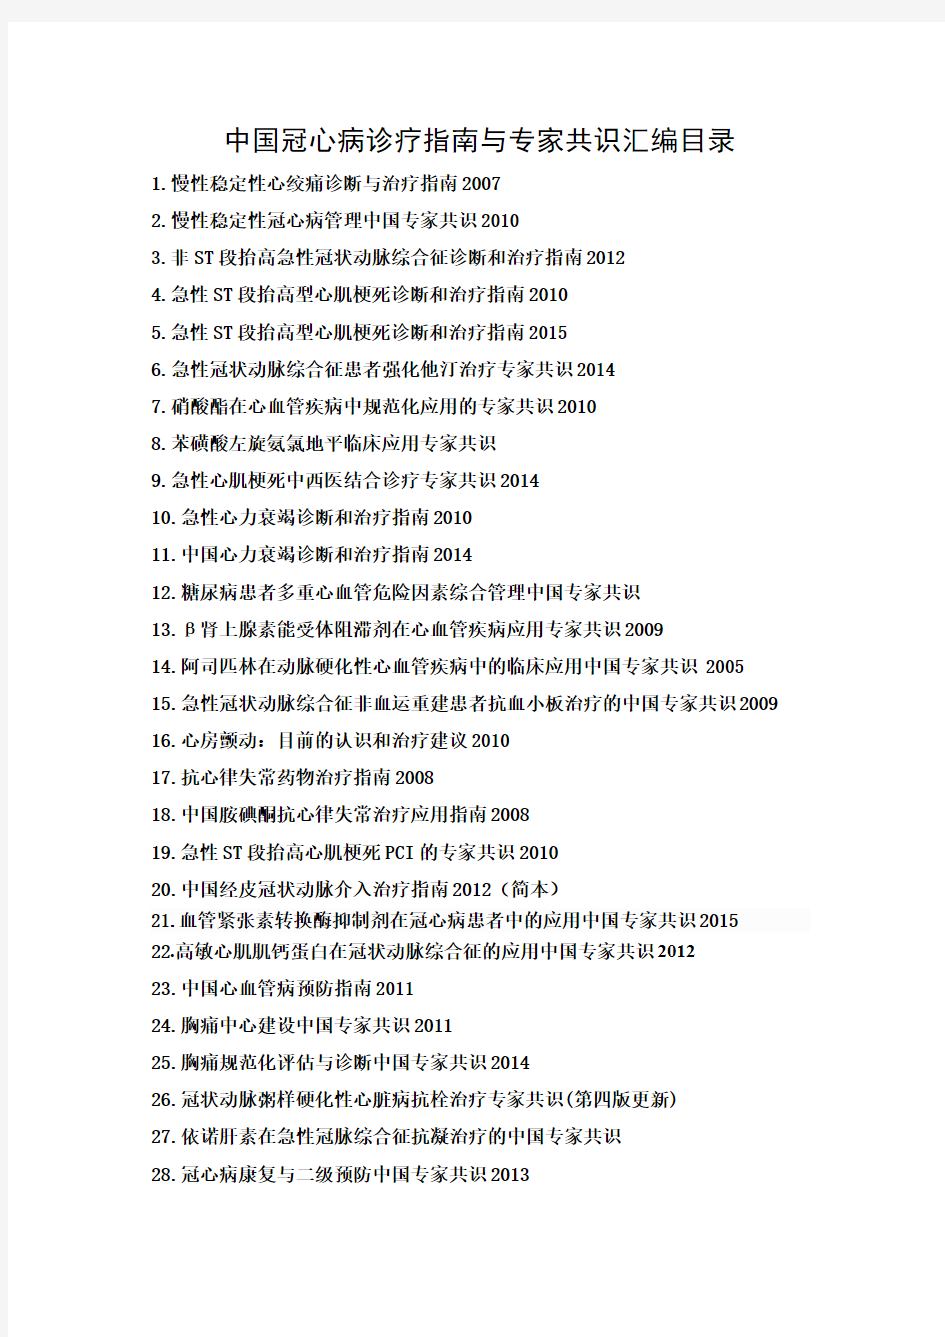 中国冠心病诊疗指南与专家共识汇编张义才2015第一版